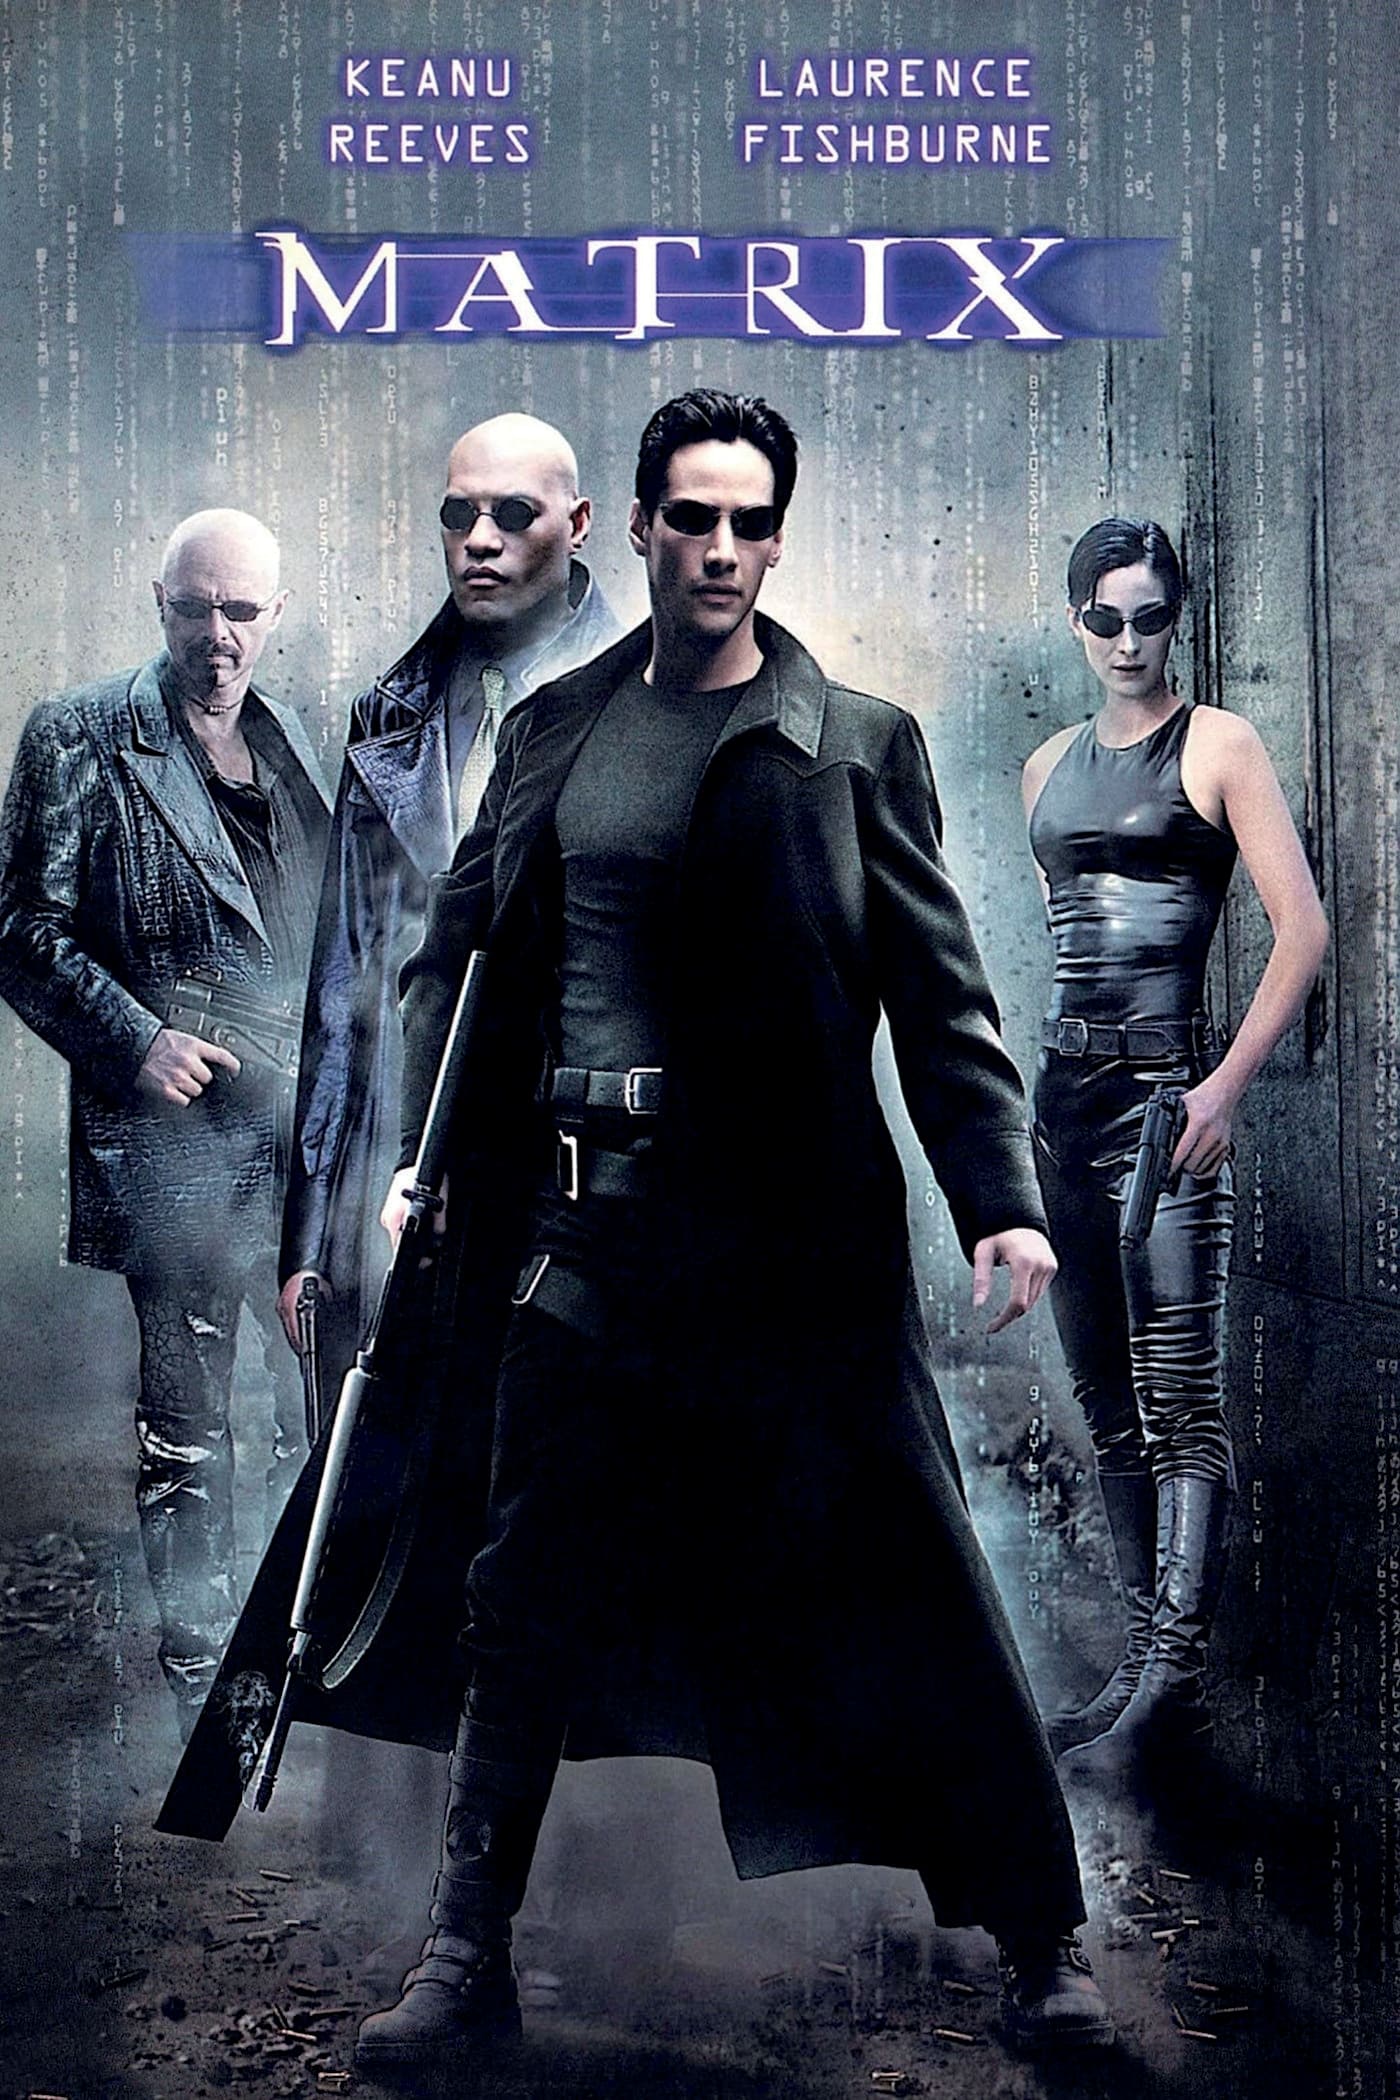 دانلود صوت دوبله فیلم The Matrix 1999